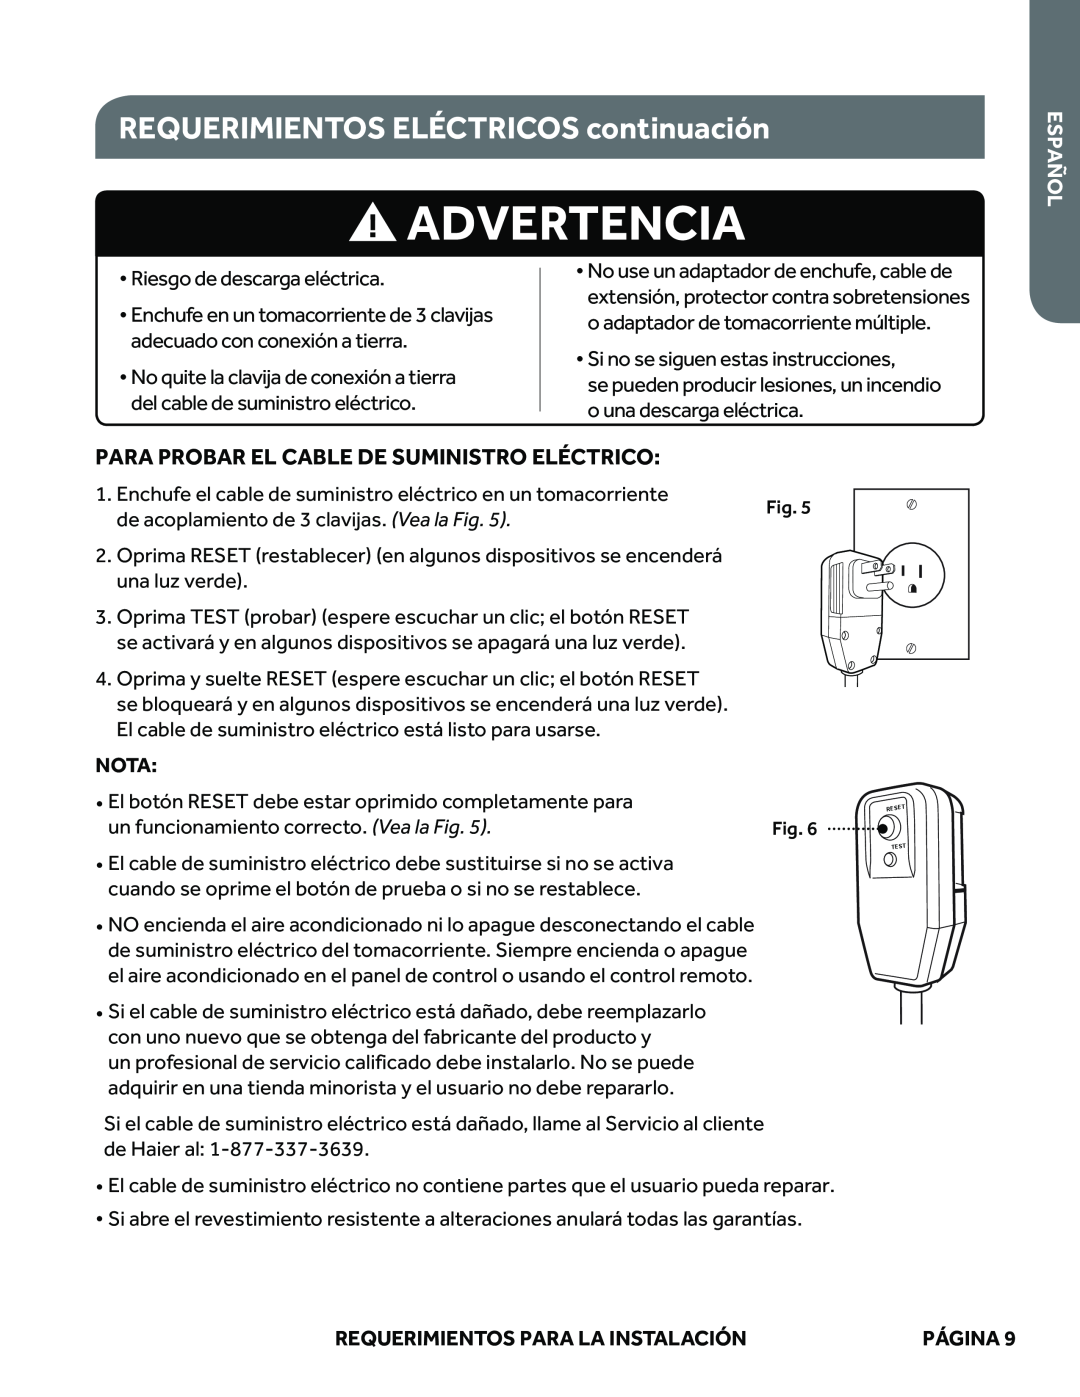 Haier ESAQ406P Advertencia, REQUERIMIENTOS ELÉCTRICOS continuación, Para Probar El Cable De Suministro Eléctrico, Español 